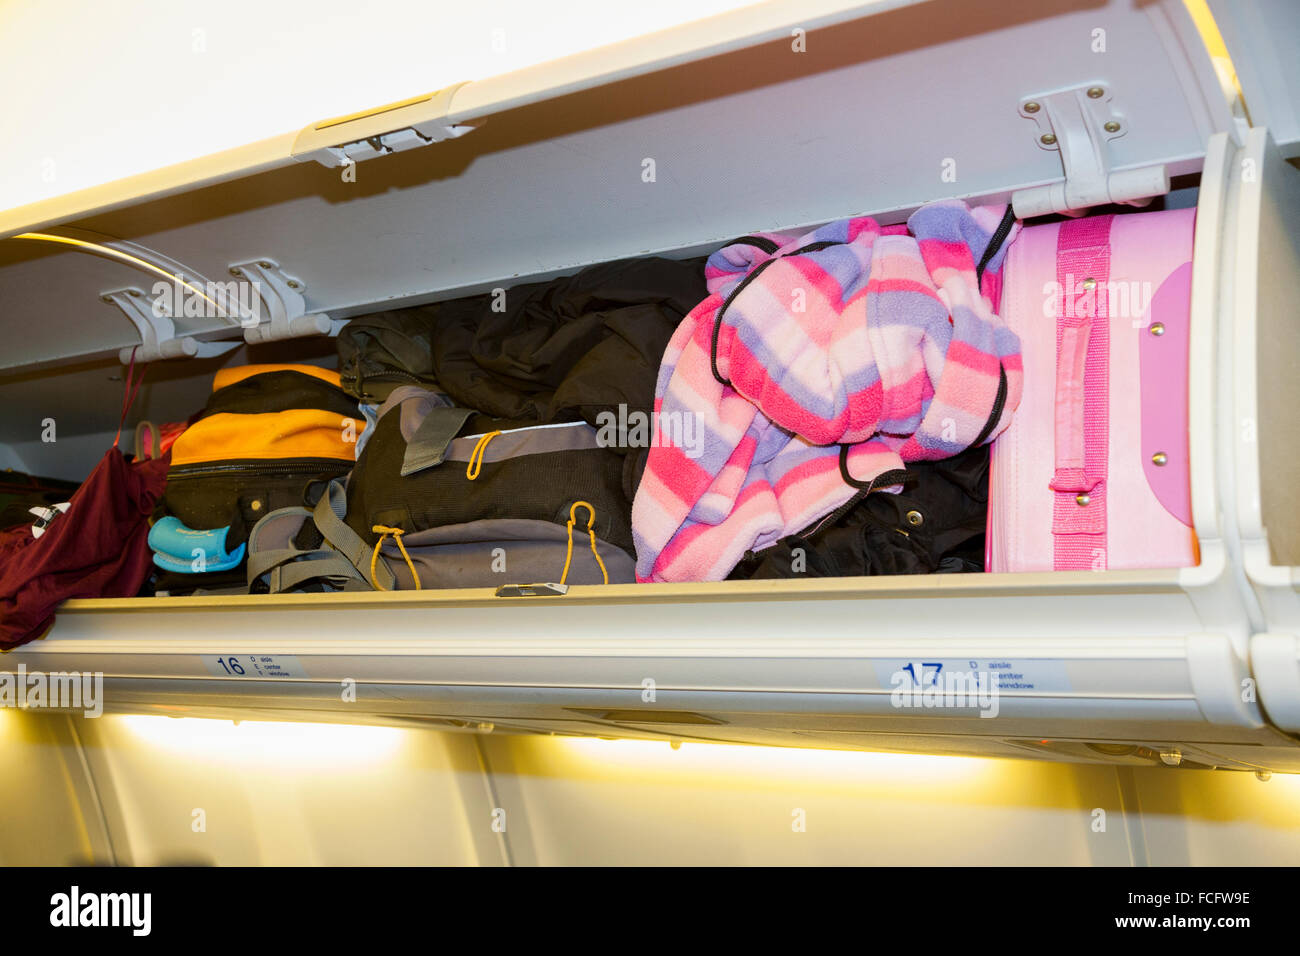 Overhead locker passeggero / armadietti / vano / scomparti per riporre i sacchetti di passeggeri come bagaglio a mano il bagaglio. KLM Airbus Foto Stock